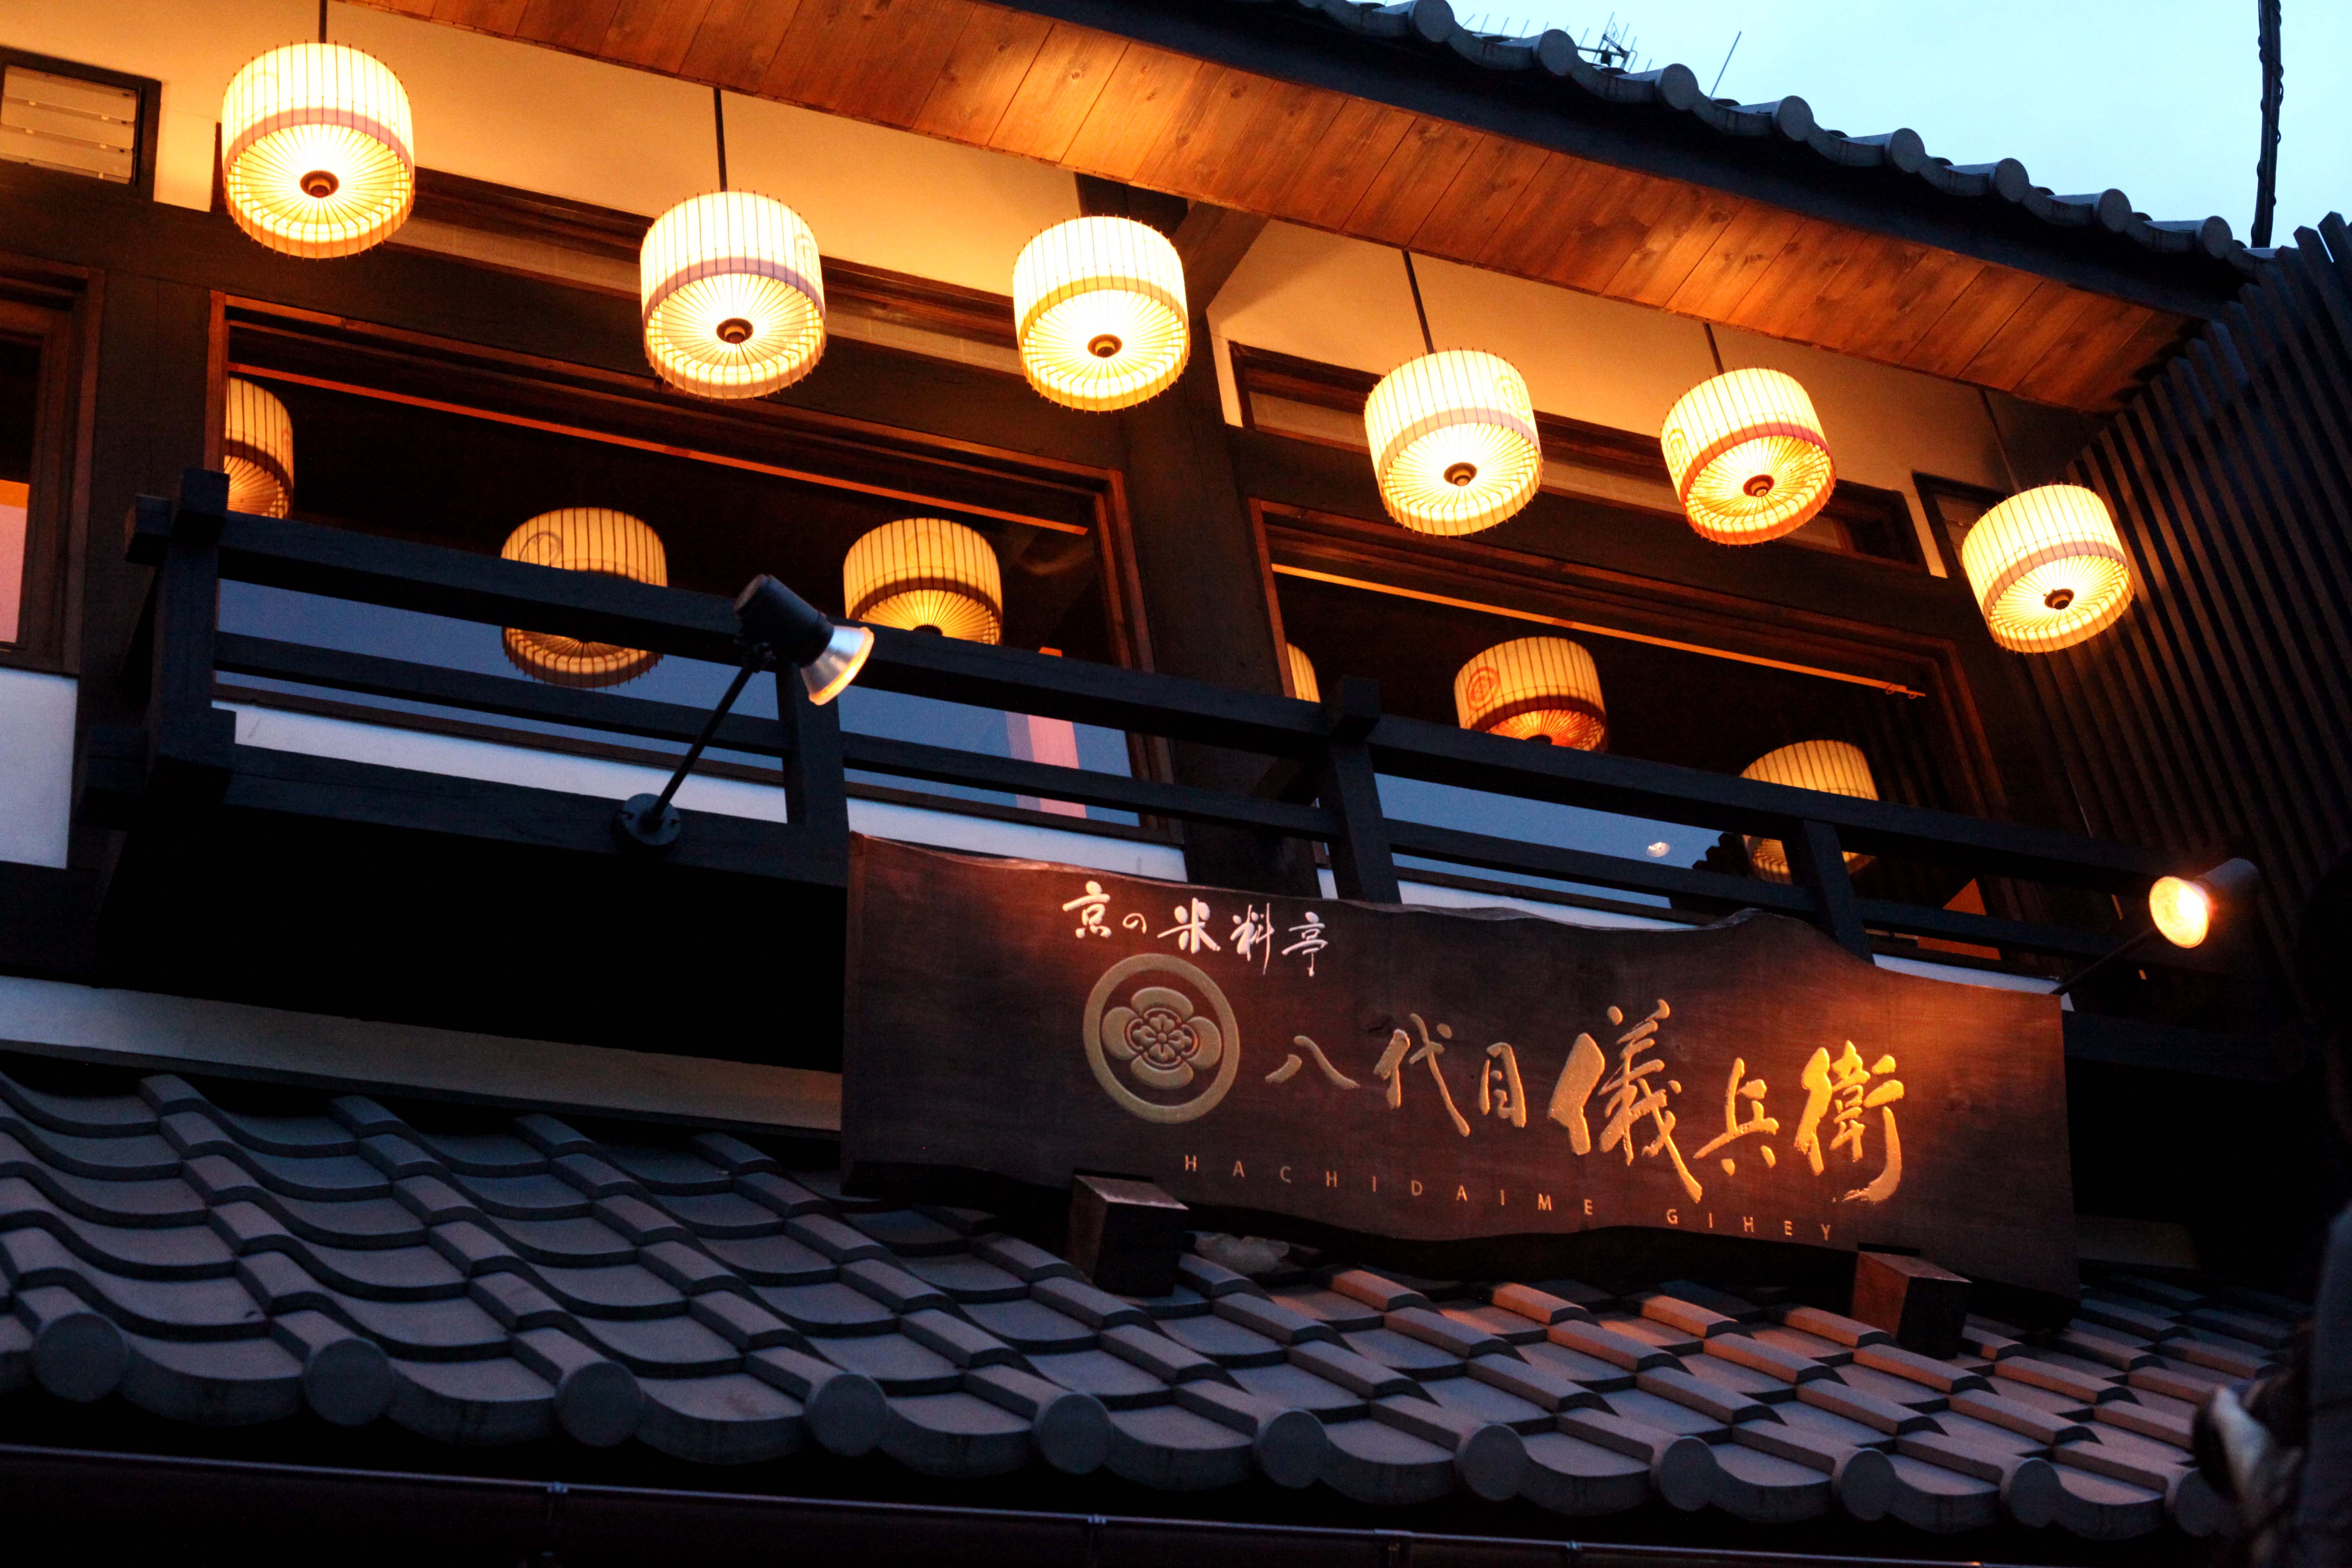 京都の老舗お米屋「八代目儀兵衛」とは